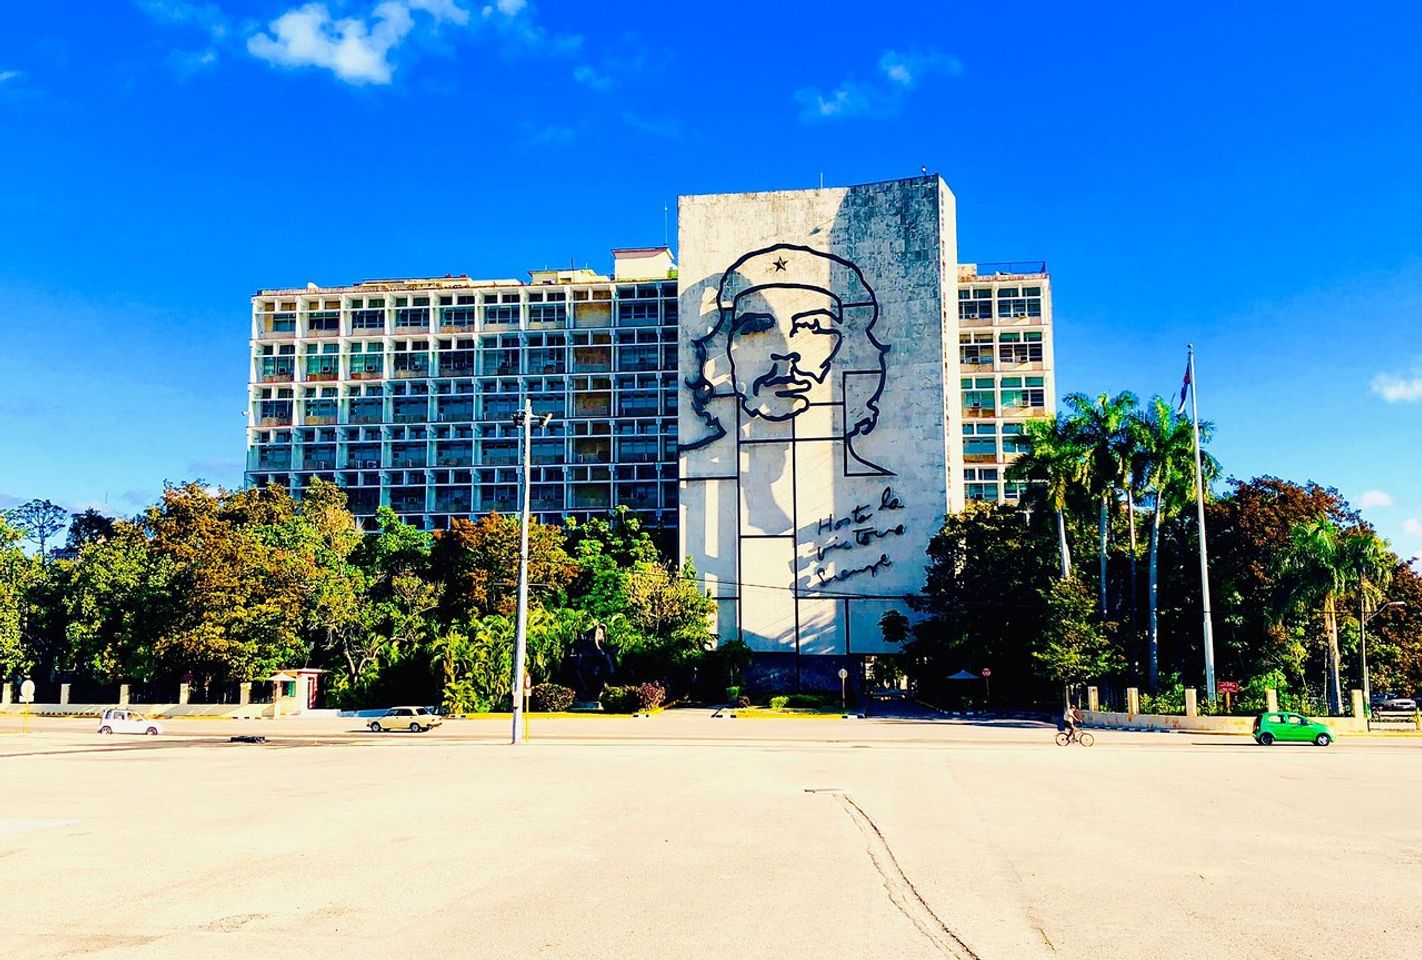 Lhistoire révolutionnaire rencontre la vie moderne: découvrez la vibrante place de Managua.